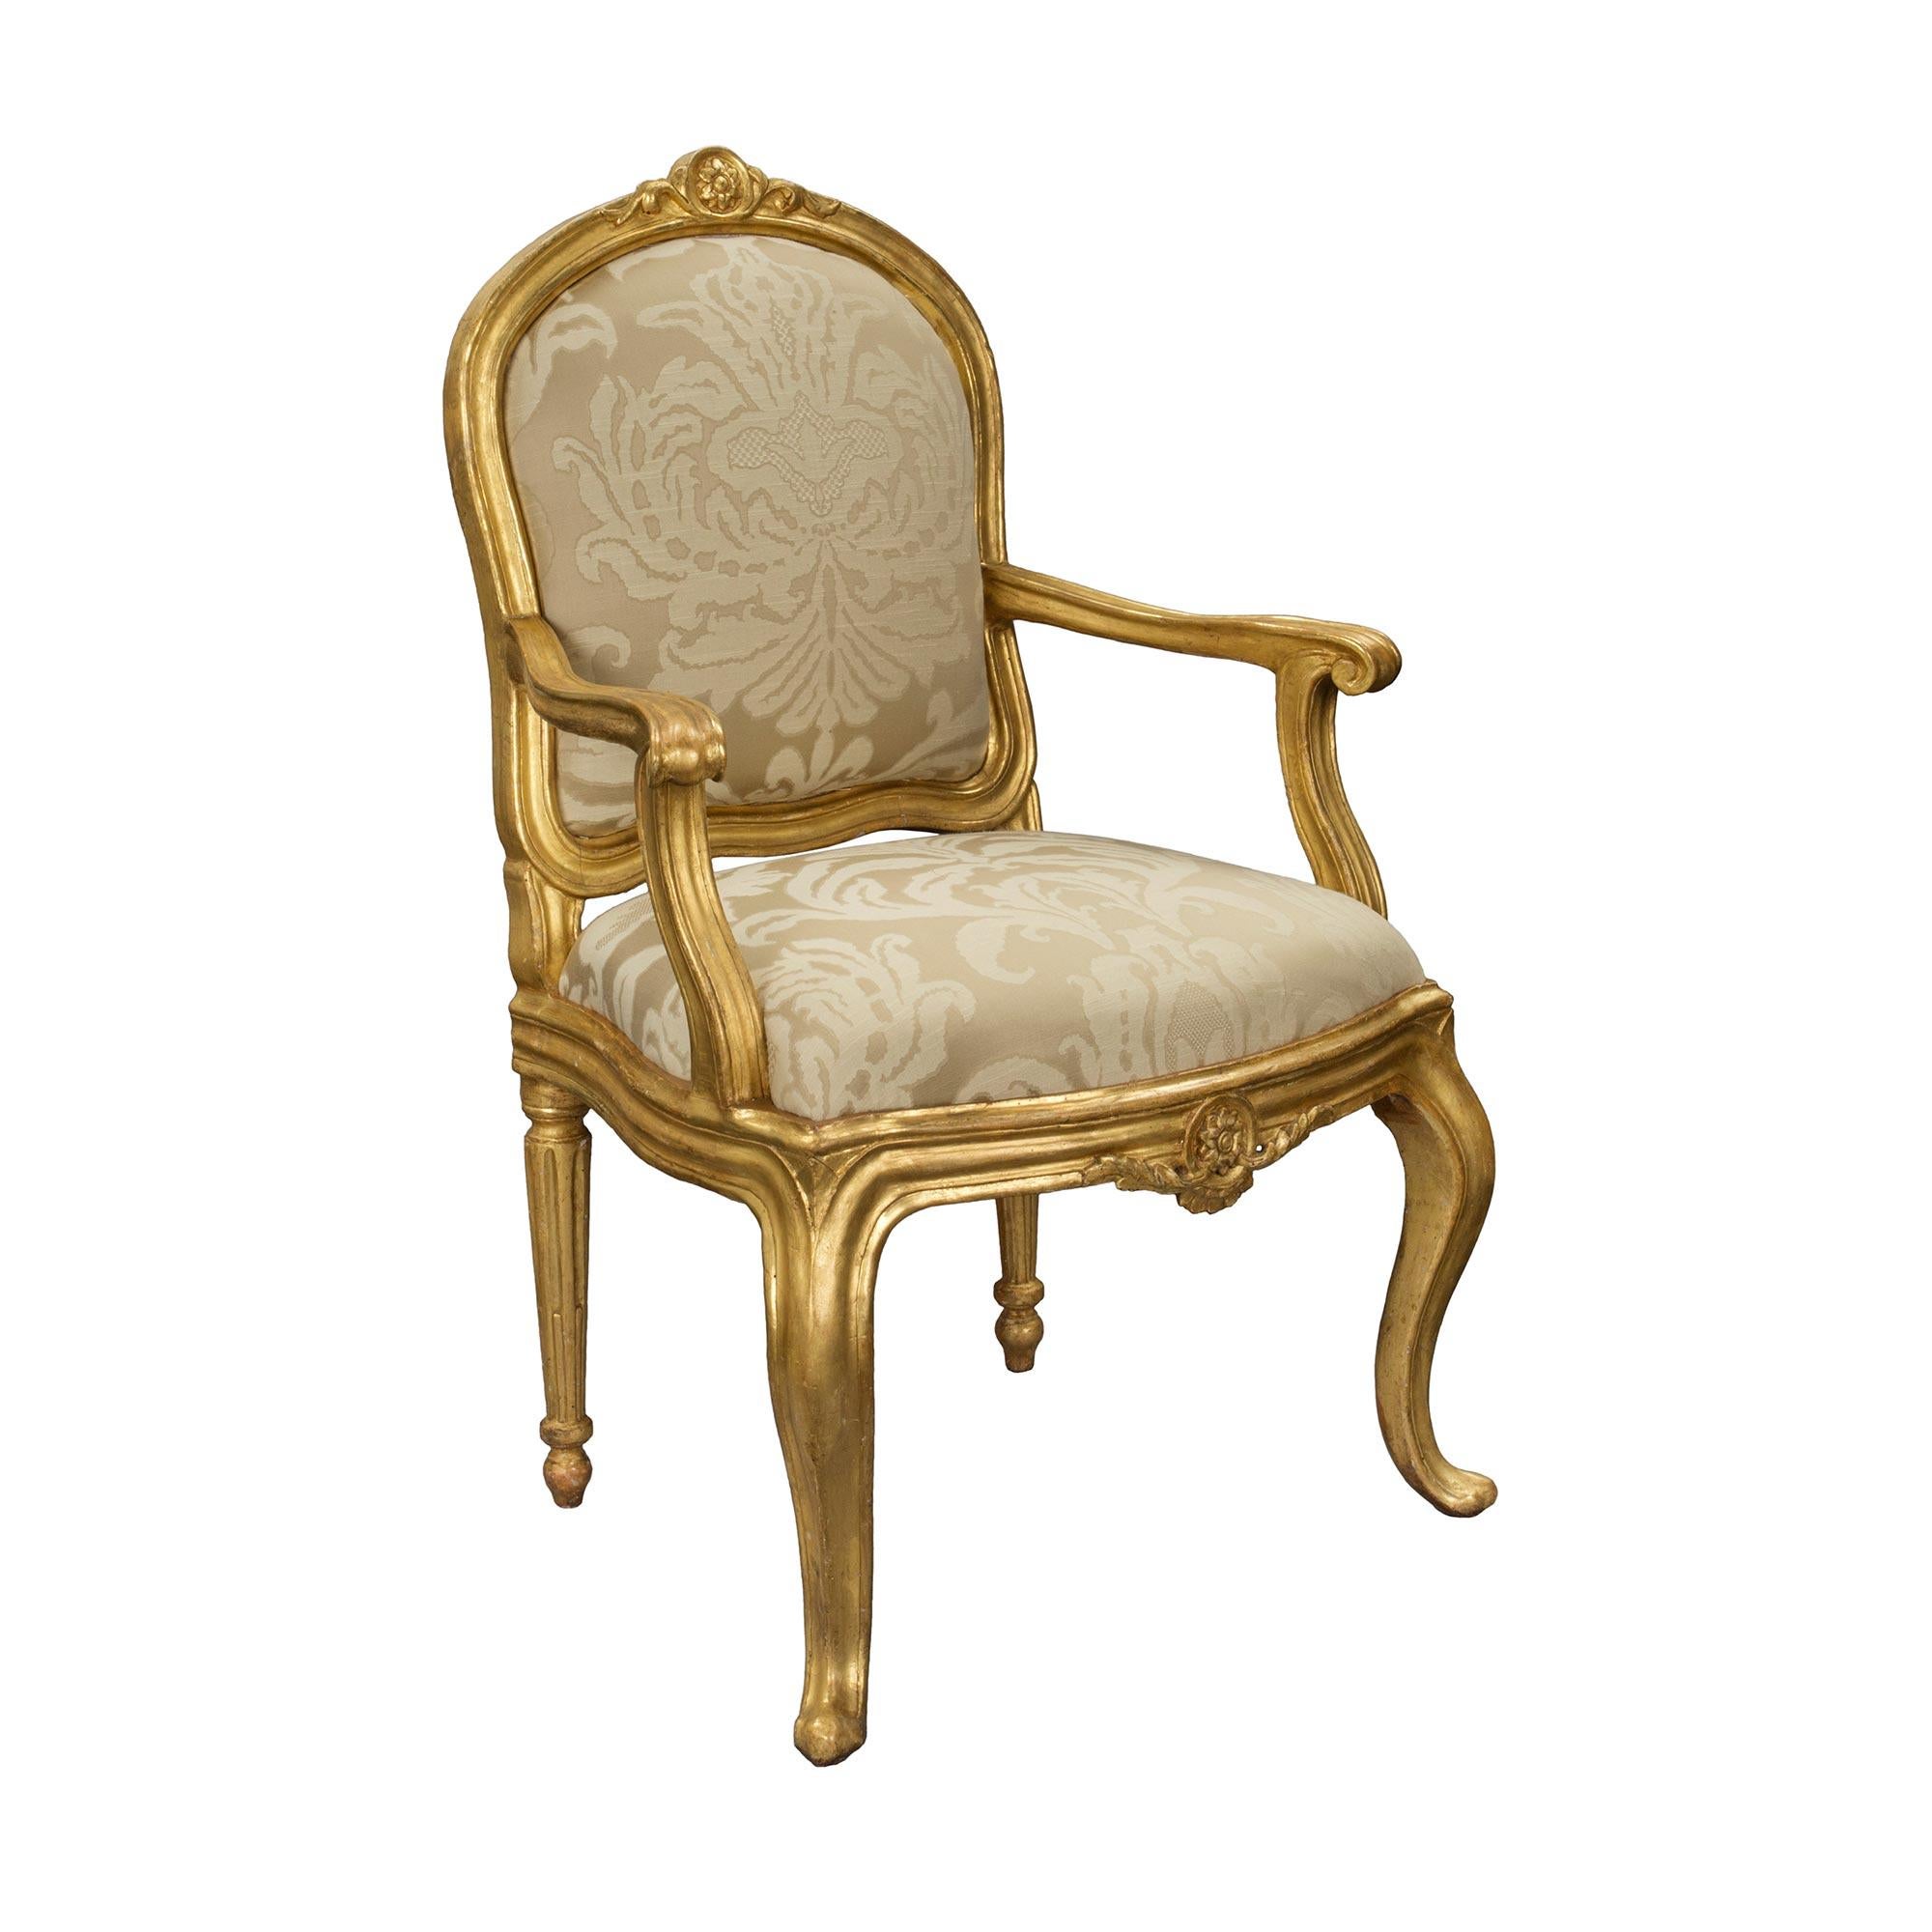 Ein auffallender und einzigartiger Satz von vier italienischen Goldholzsesseln aus der Übergangszeit des 18. Jeder Sessel steht auf prächtigen Cabriole-Beinen an der Vorderseite und eleganten, sich verjüngenden, kannelierten Beinen an der Rückseite.